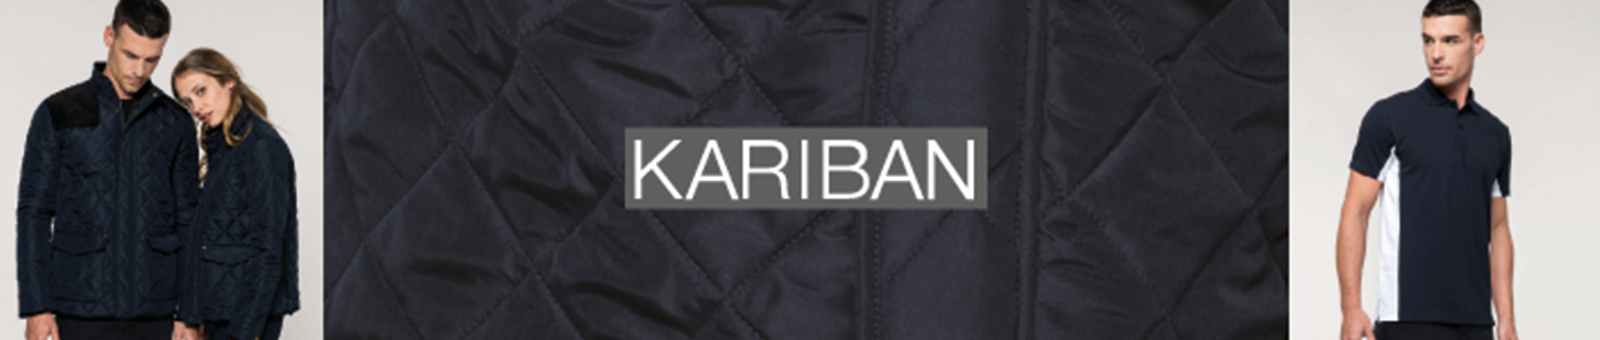 Kariban werkkleding Baan Bedrijfskleding